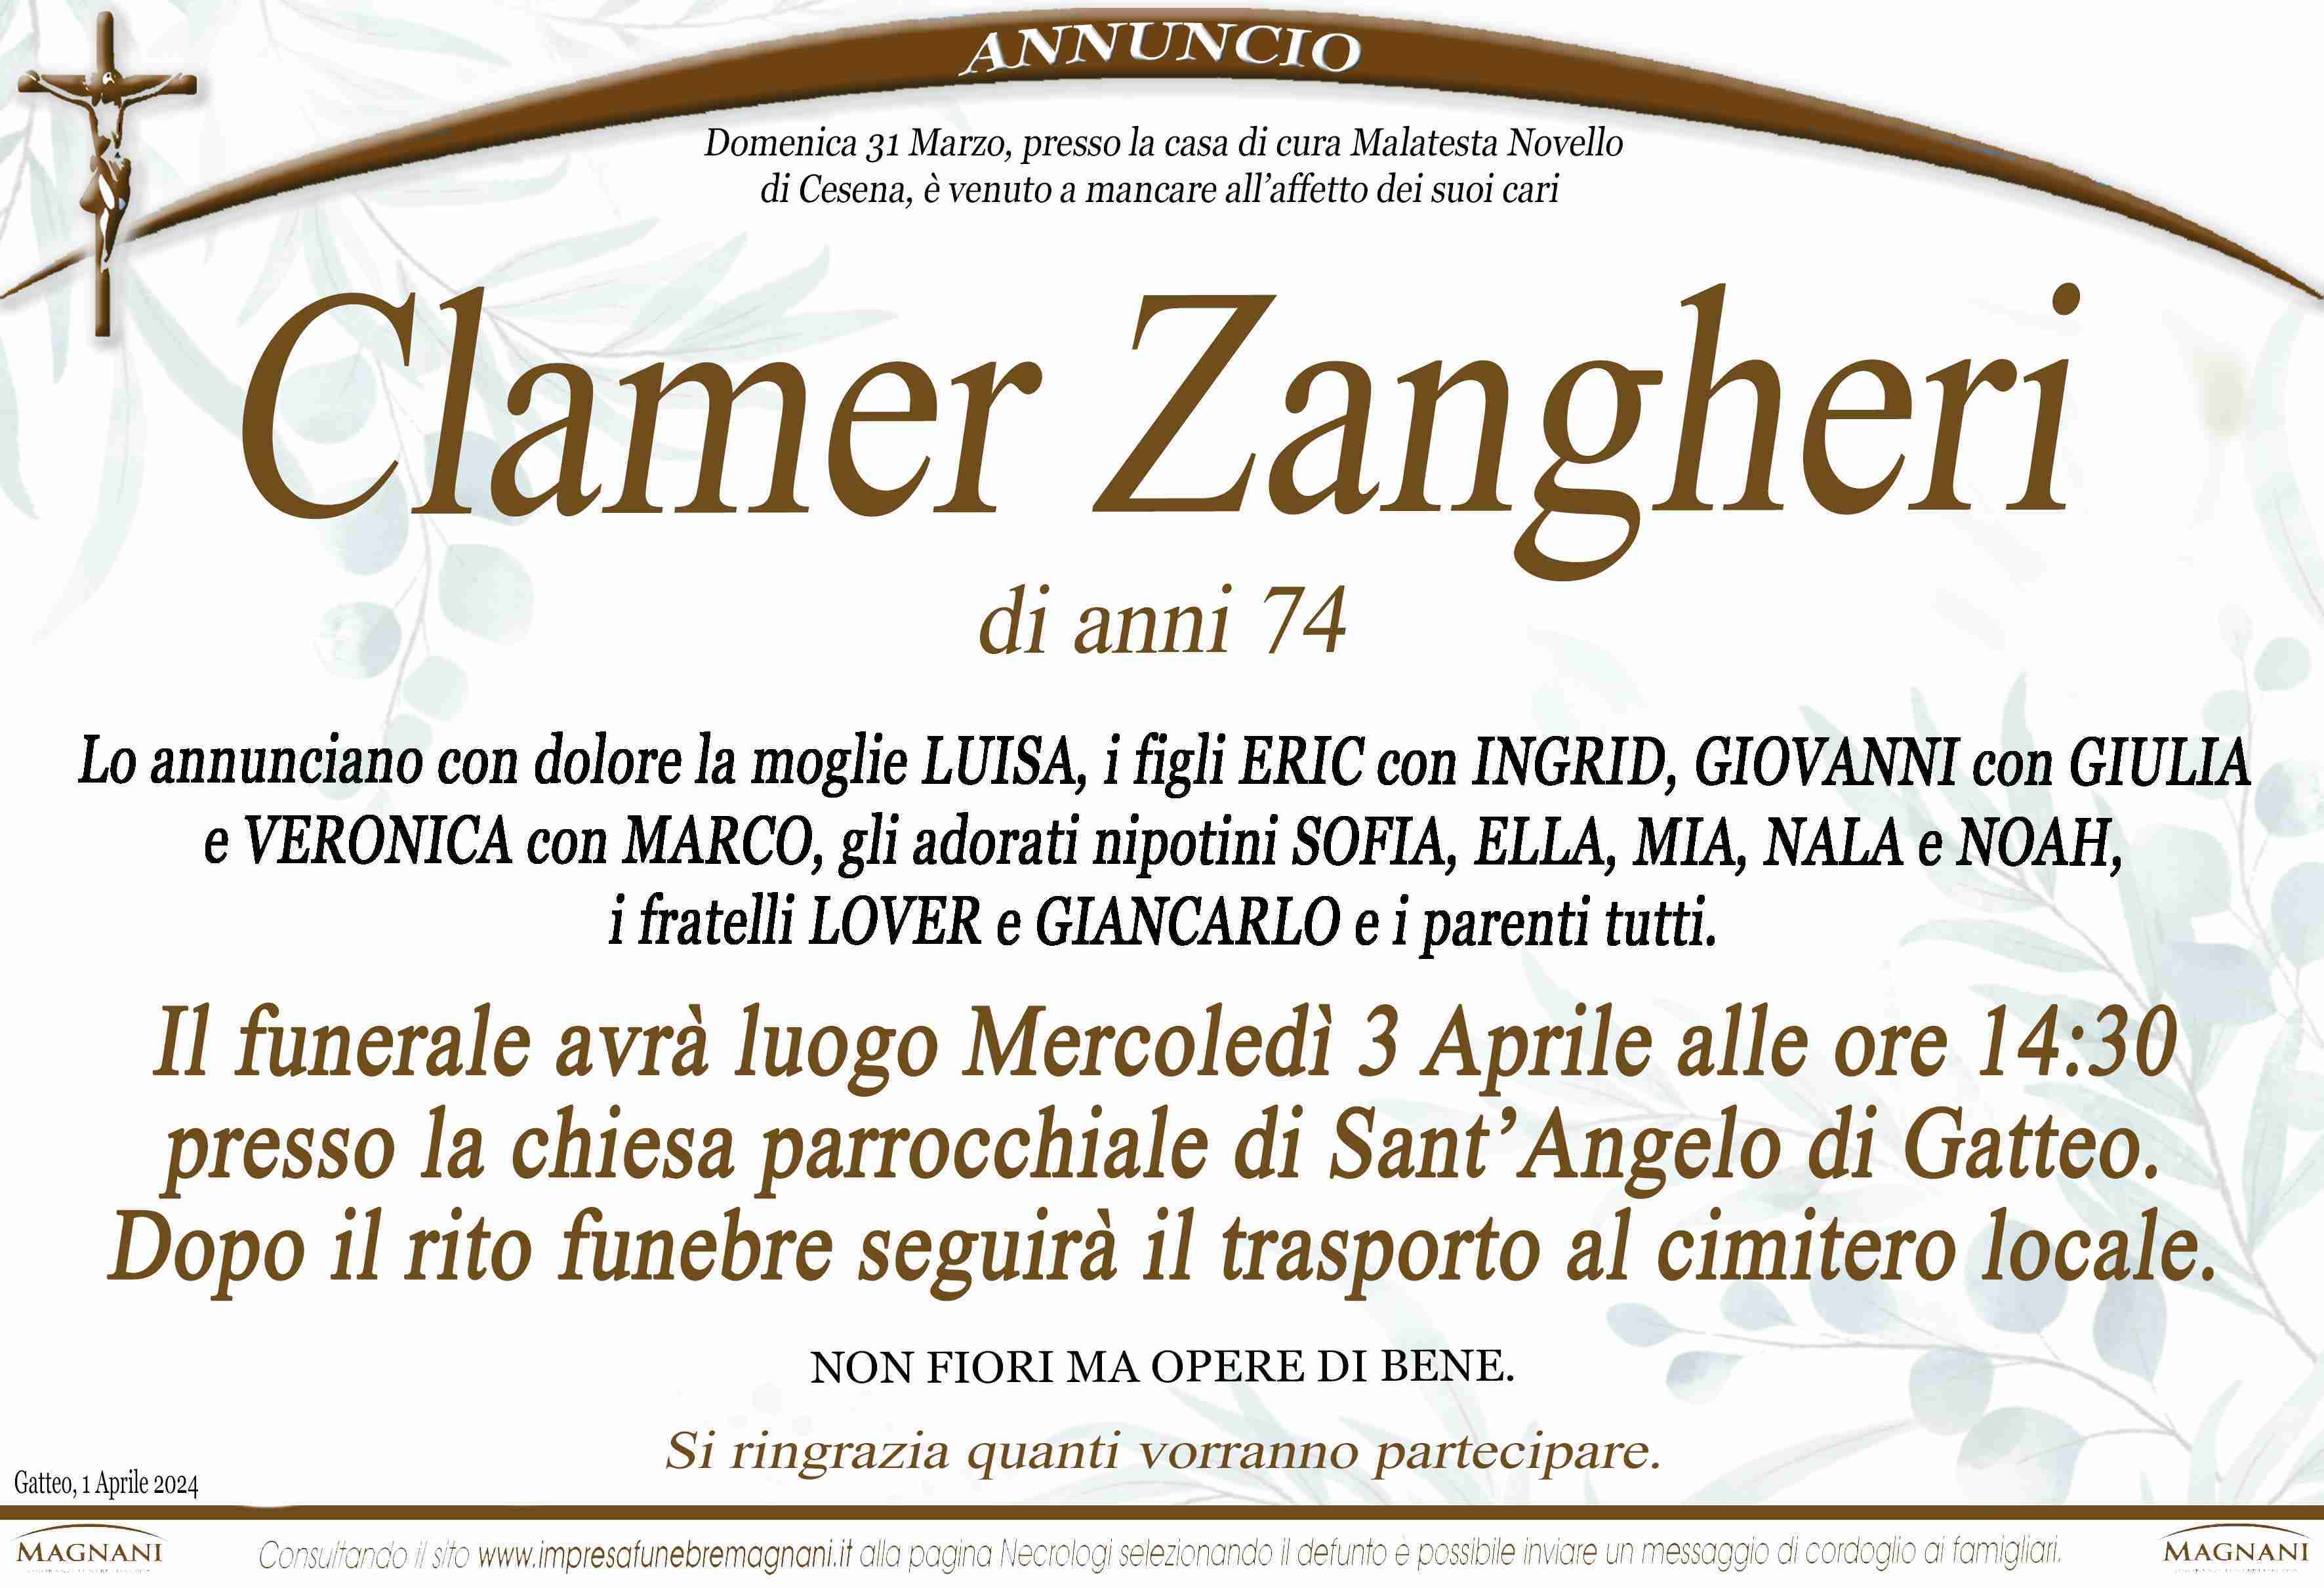 Zangheri Clamer